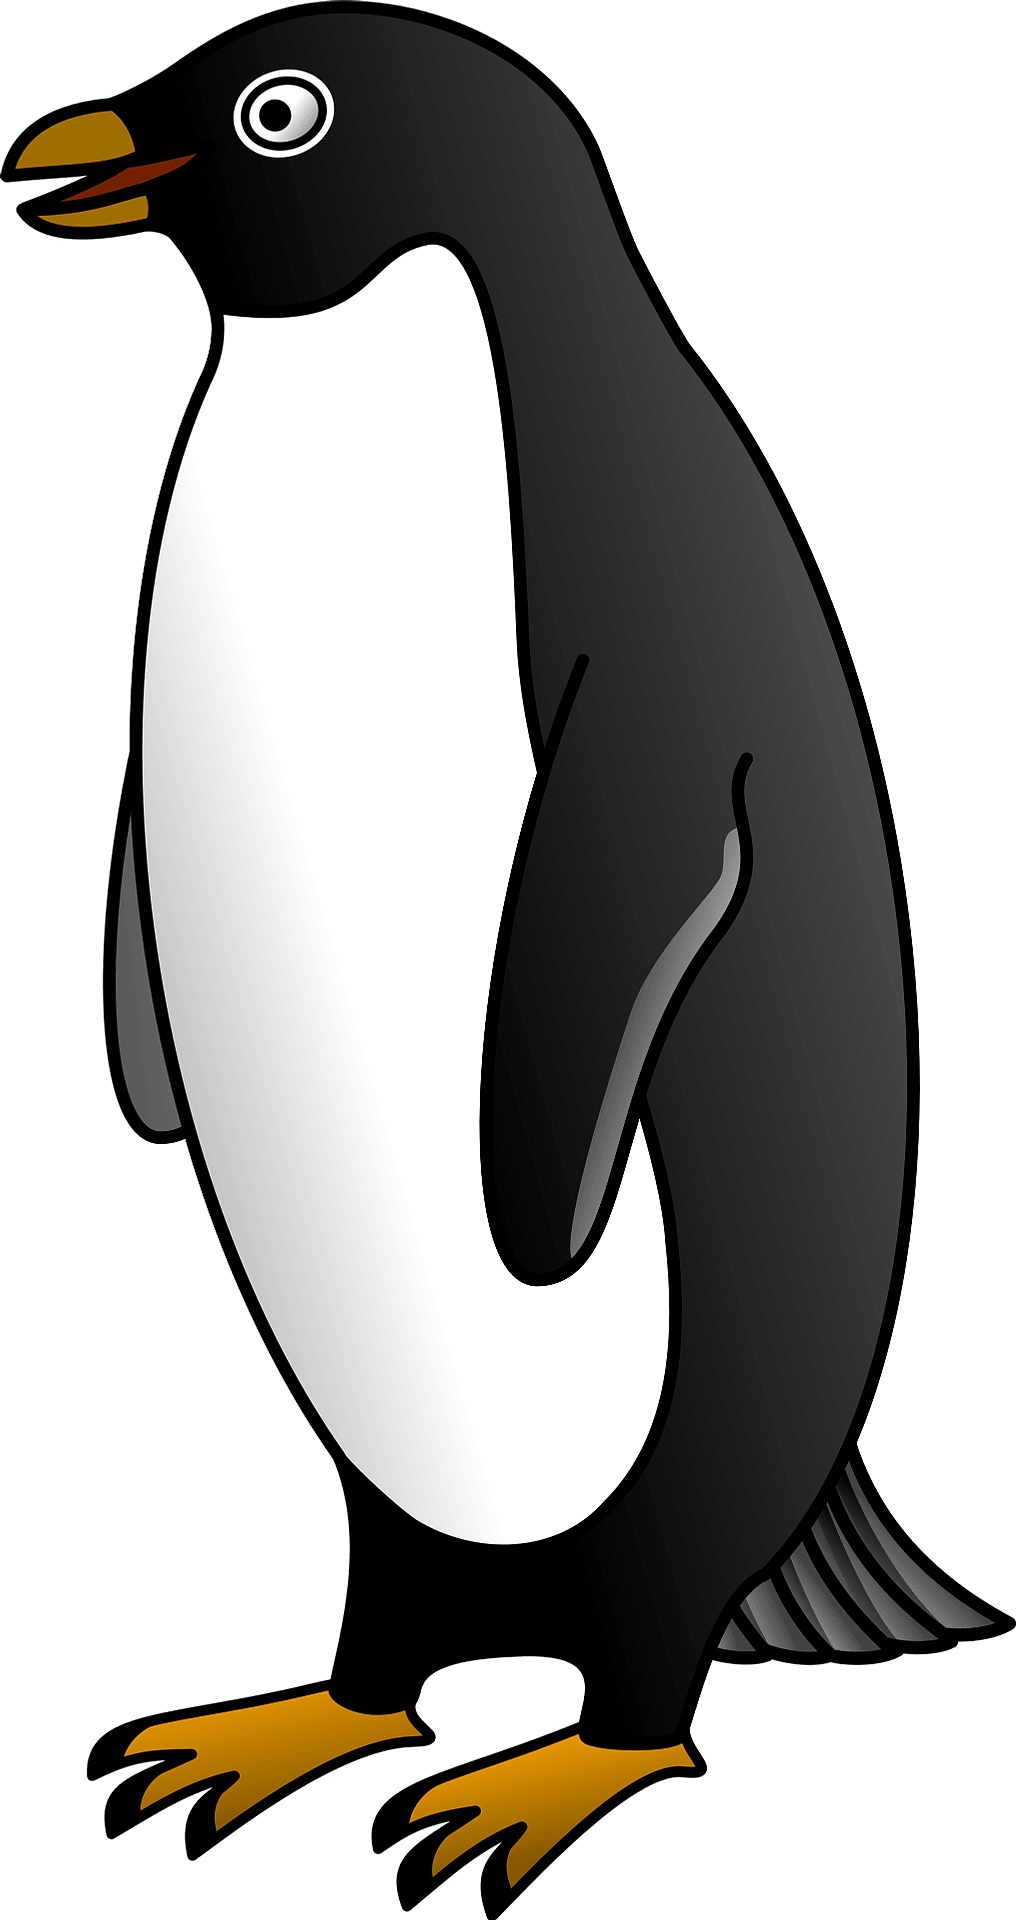 Disegno da colorare di un pinguino